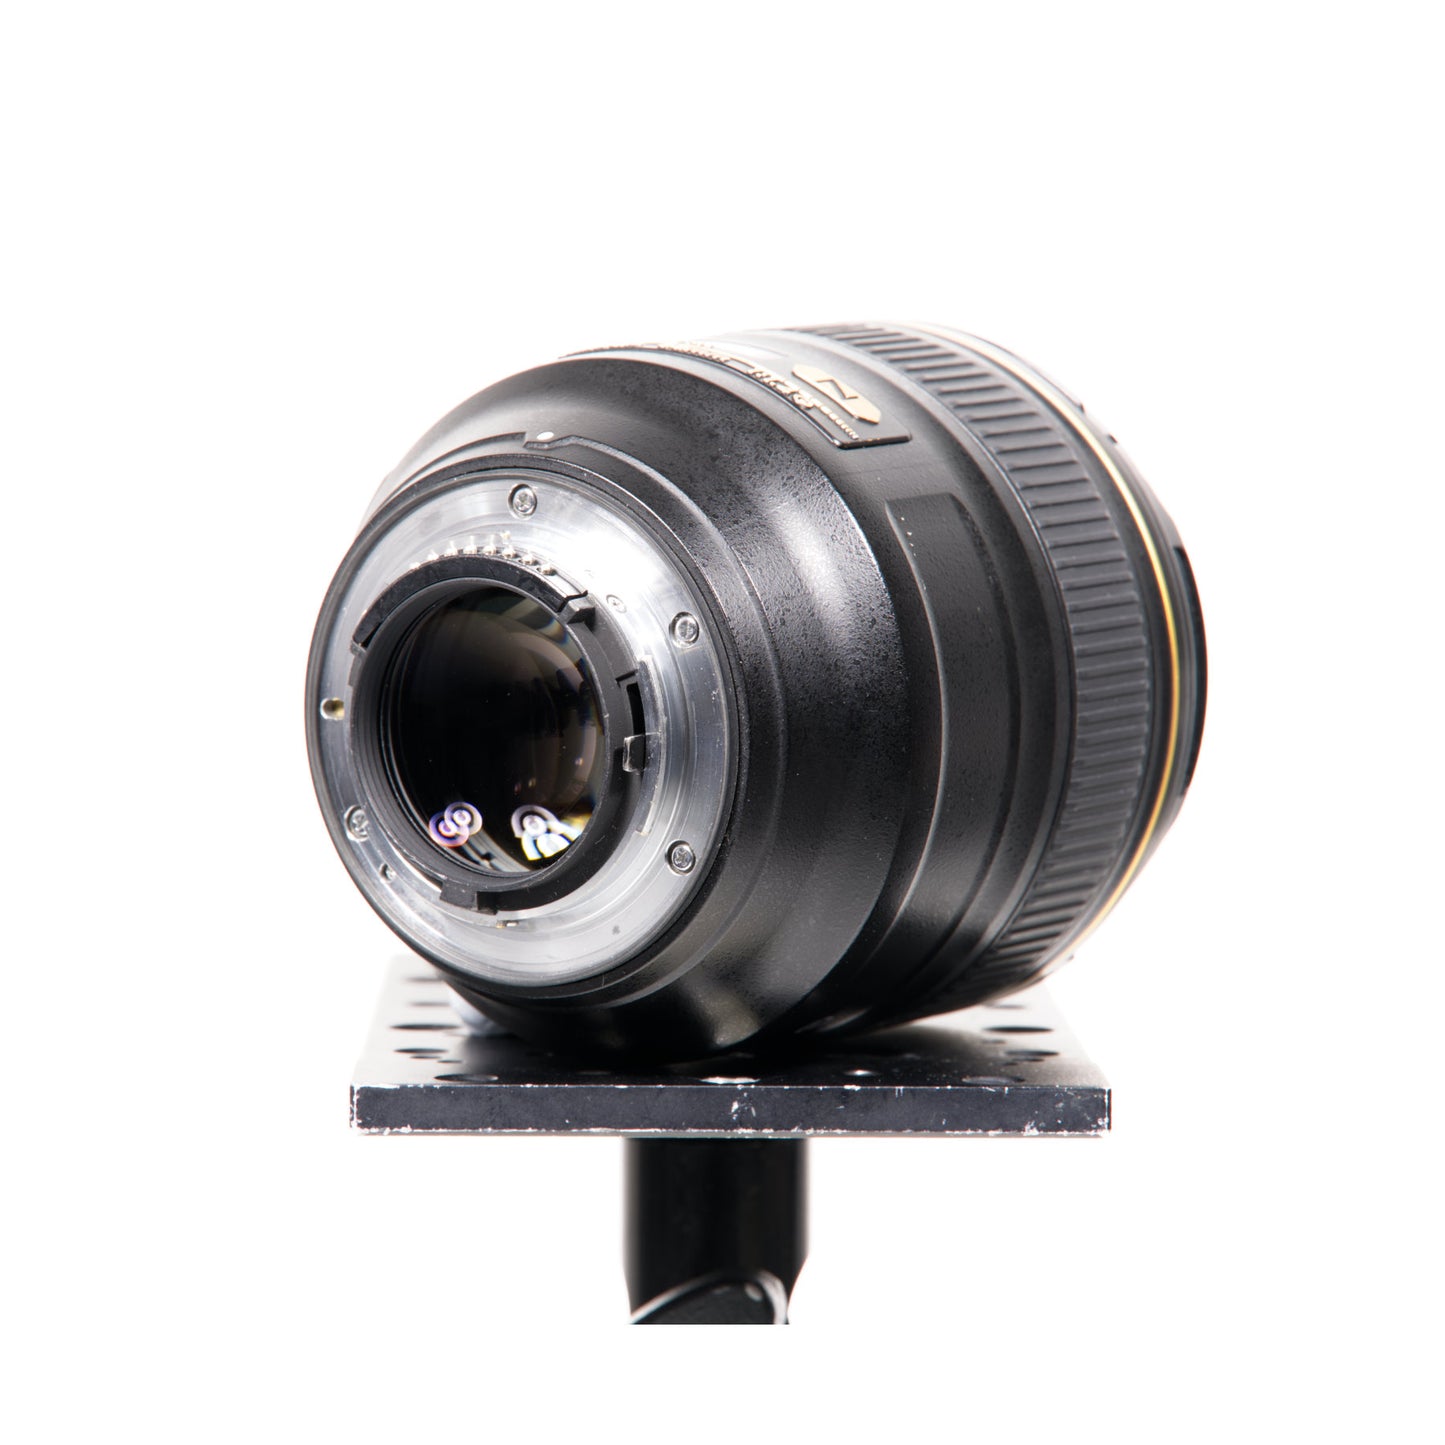 Buy Nikon AF-S NIKKOR 85mm f/1.4G Lens at Topic Store